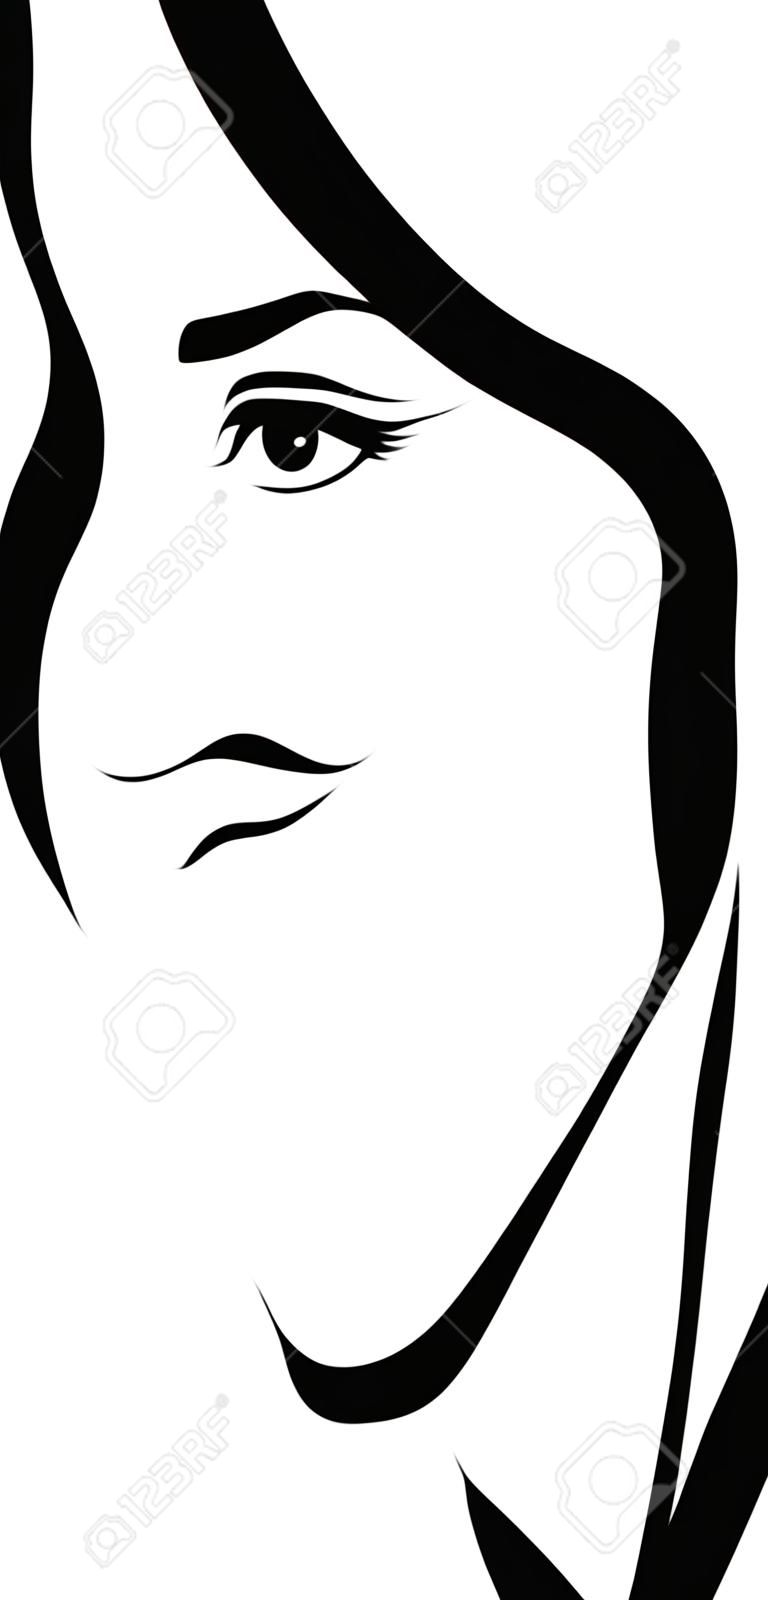 Dessin au trait de profil de visage de femme